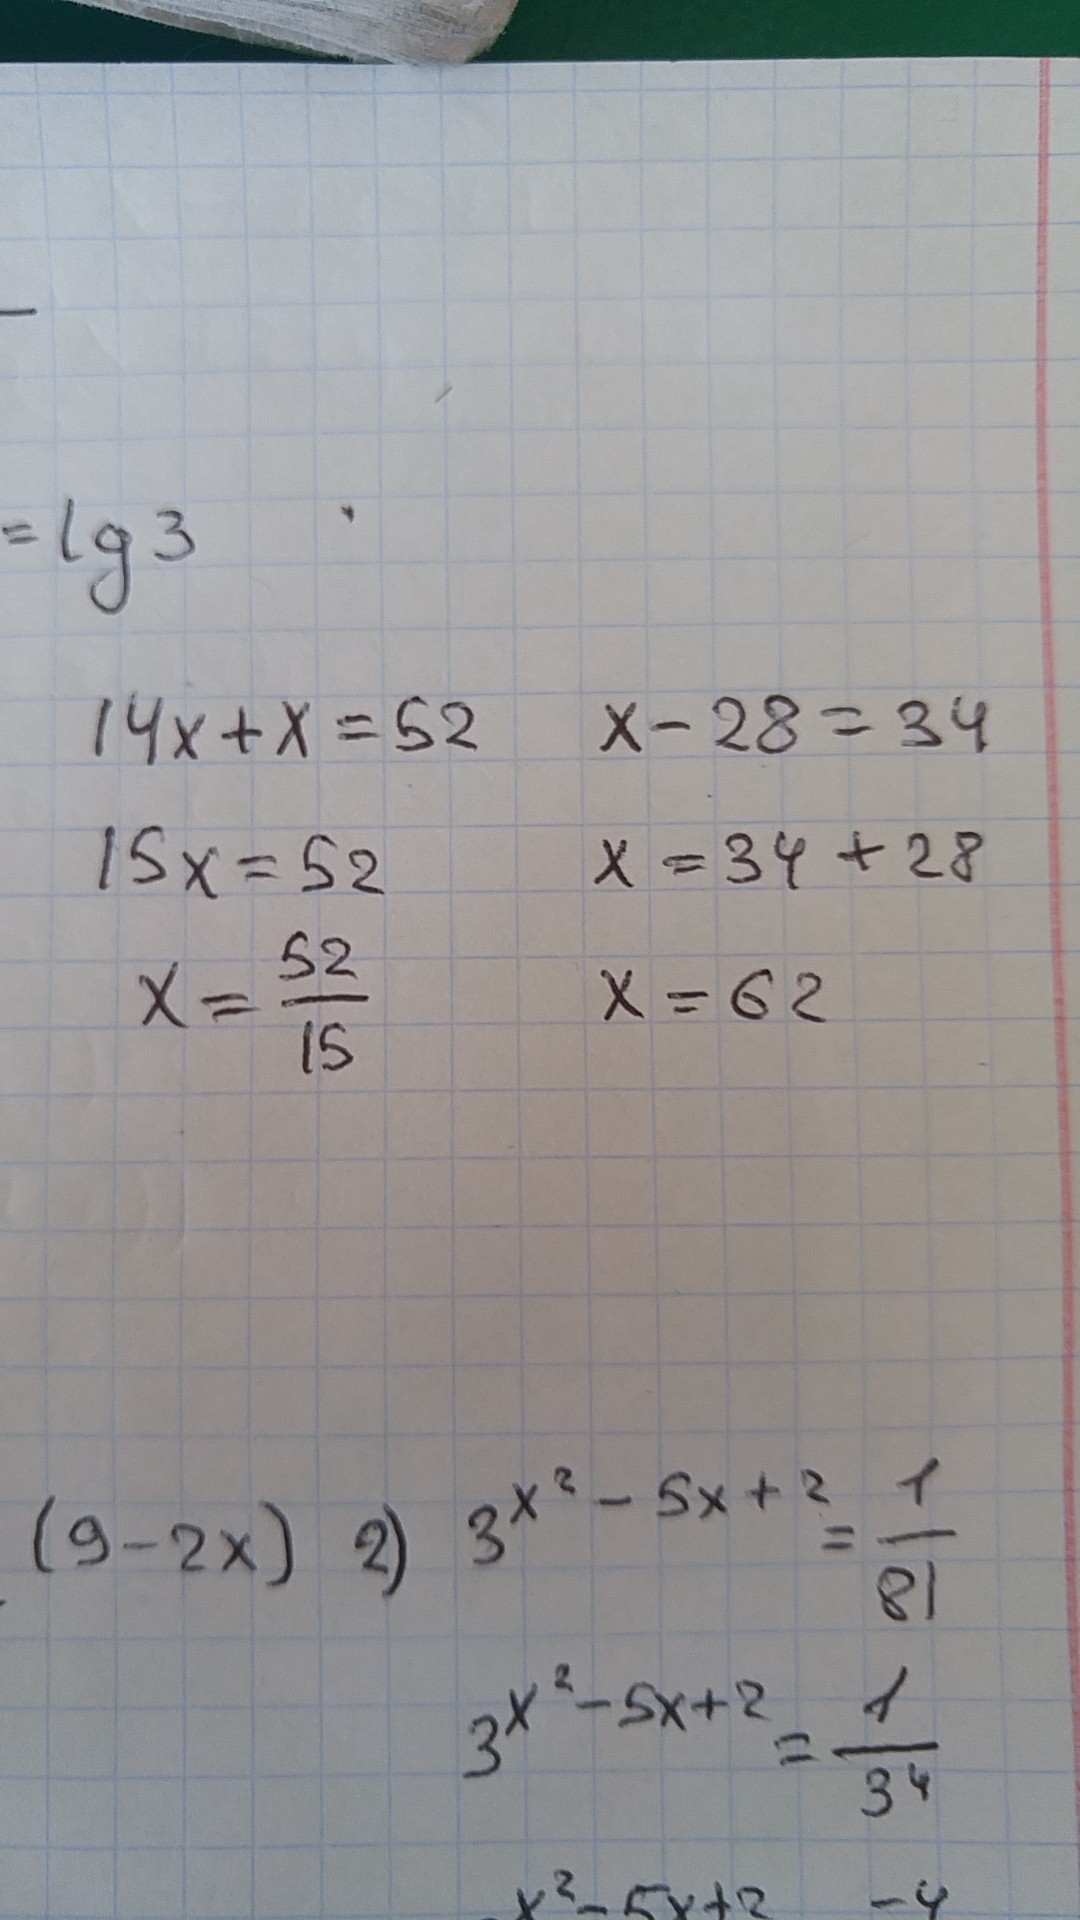 Реши уравнения 14 52. 14+Х=52 решение. Реши уравнение 14 + x = 52. (Х+28)-14 уравнение. Уравнения -8 - у = -14.